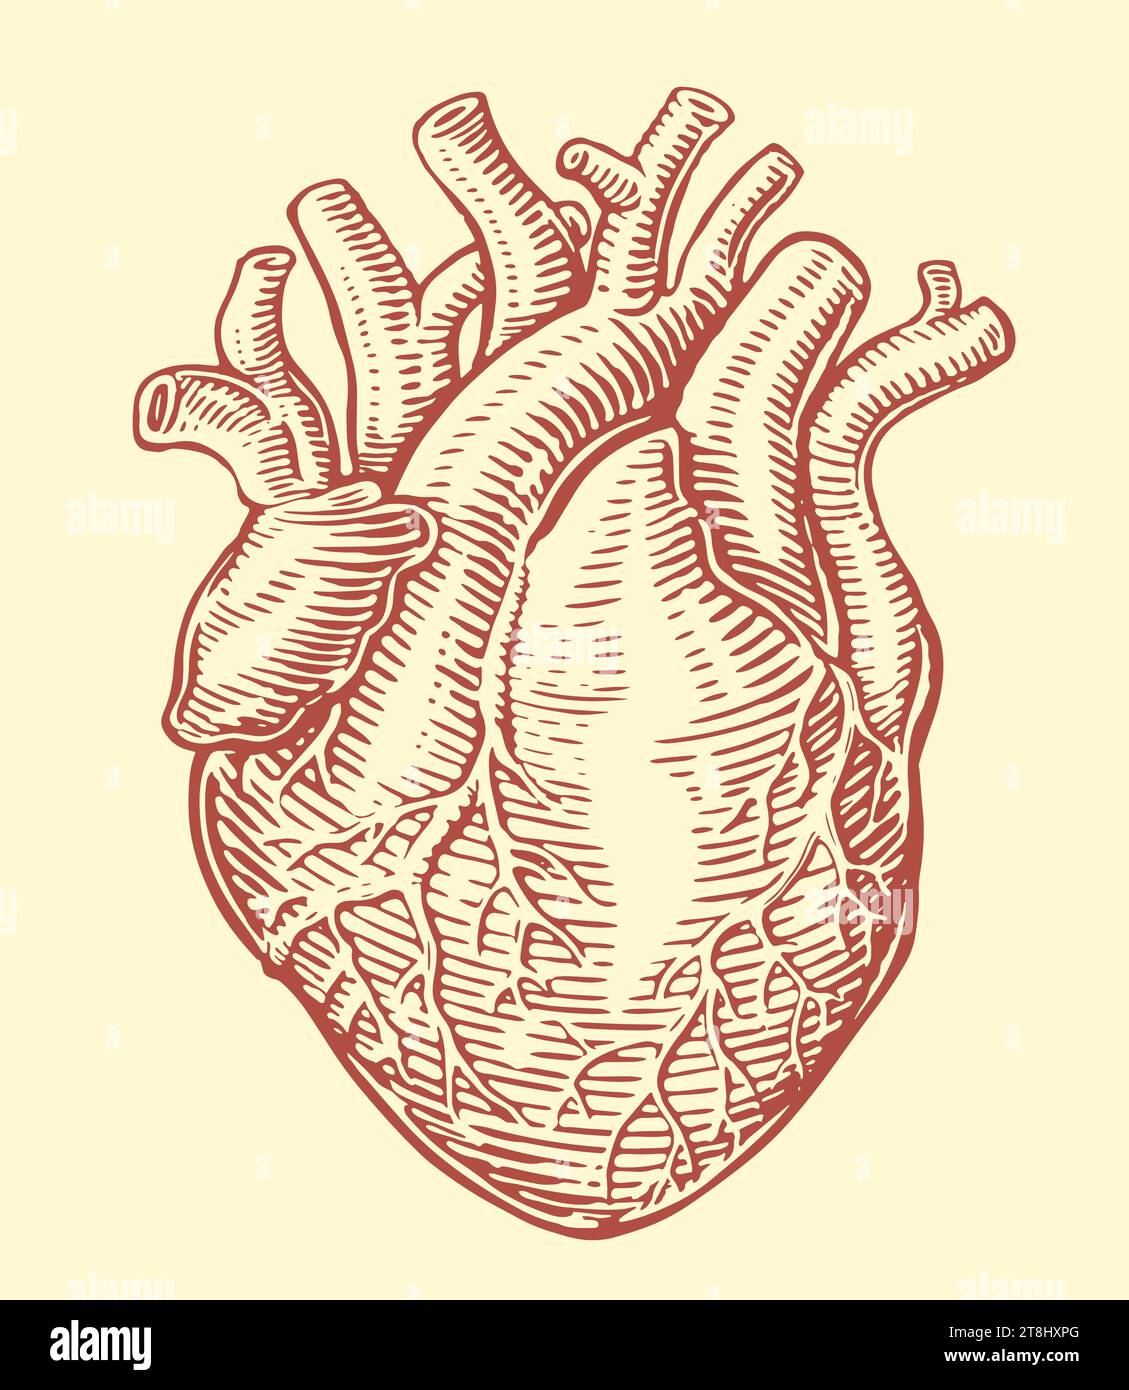 Menschliches Herz mit anatomischem Venensystem. Handgezeichnete Skizze Vintage Vektor Illustration Stock Vektor